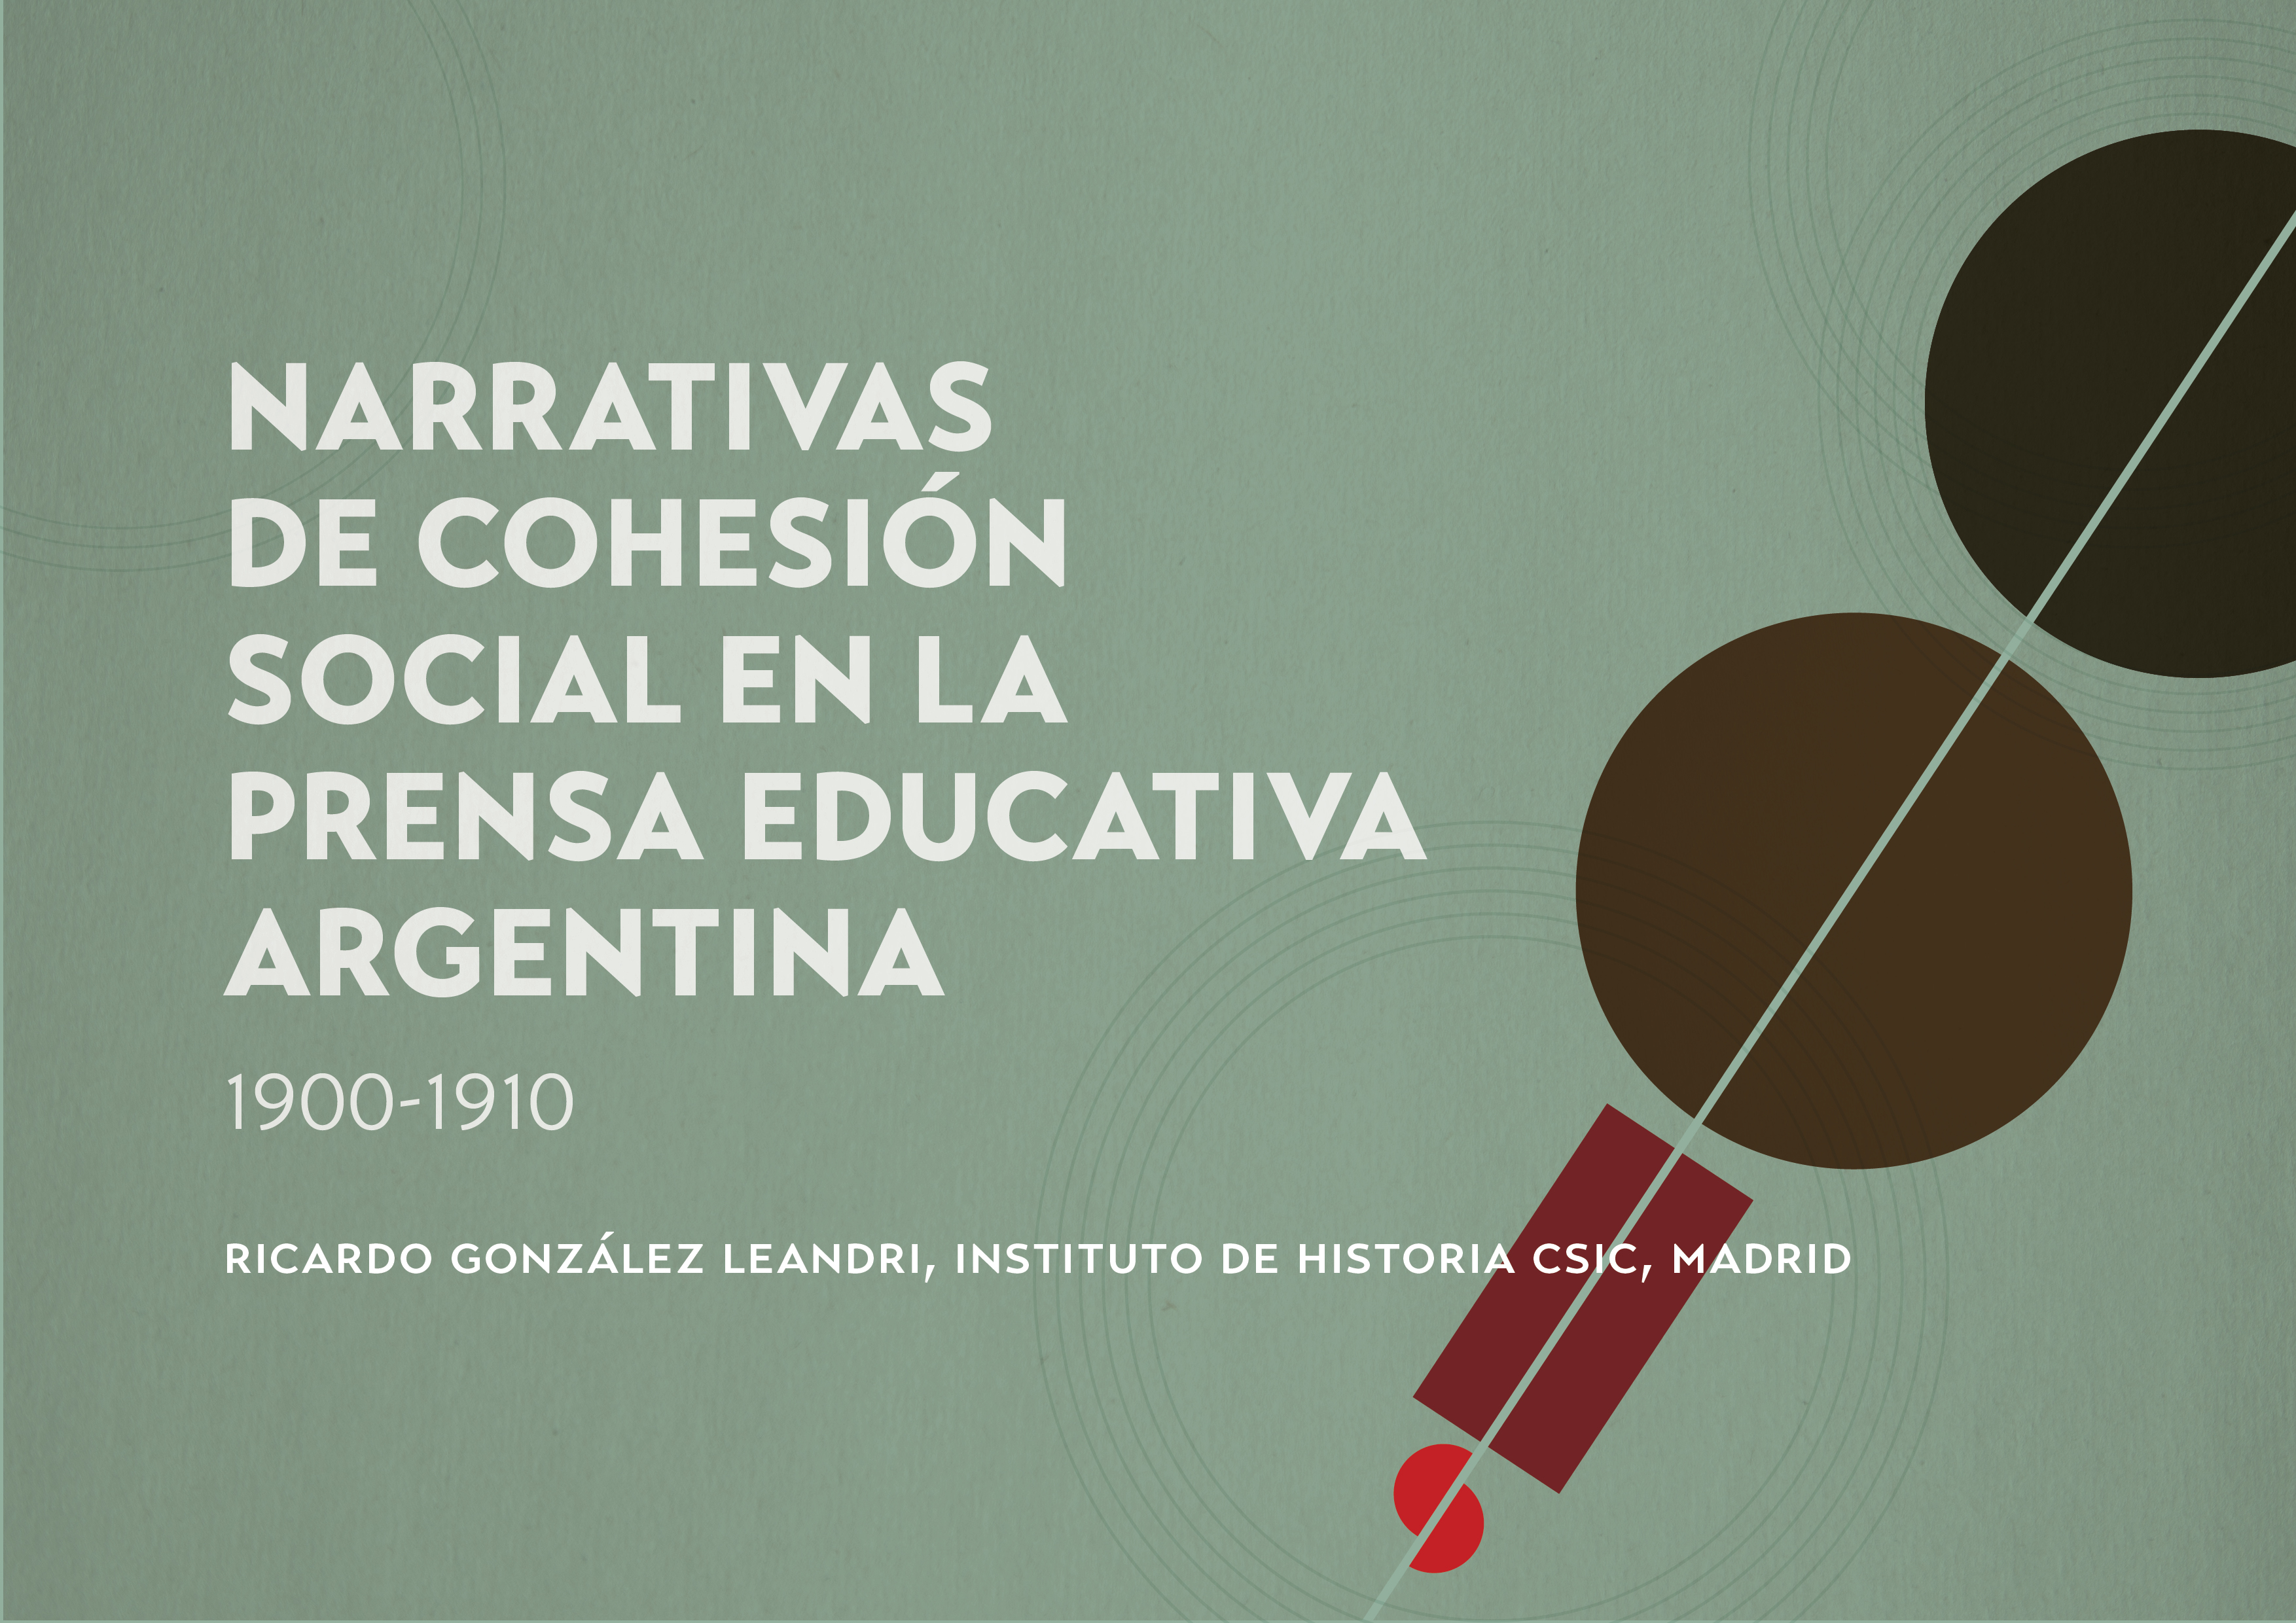 invitación al seminario Narrativas de cohesión social en la prensa educativa